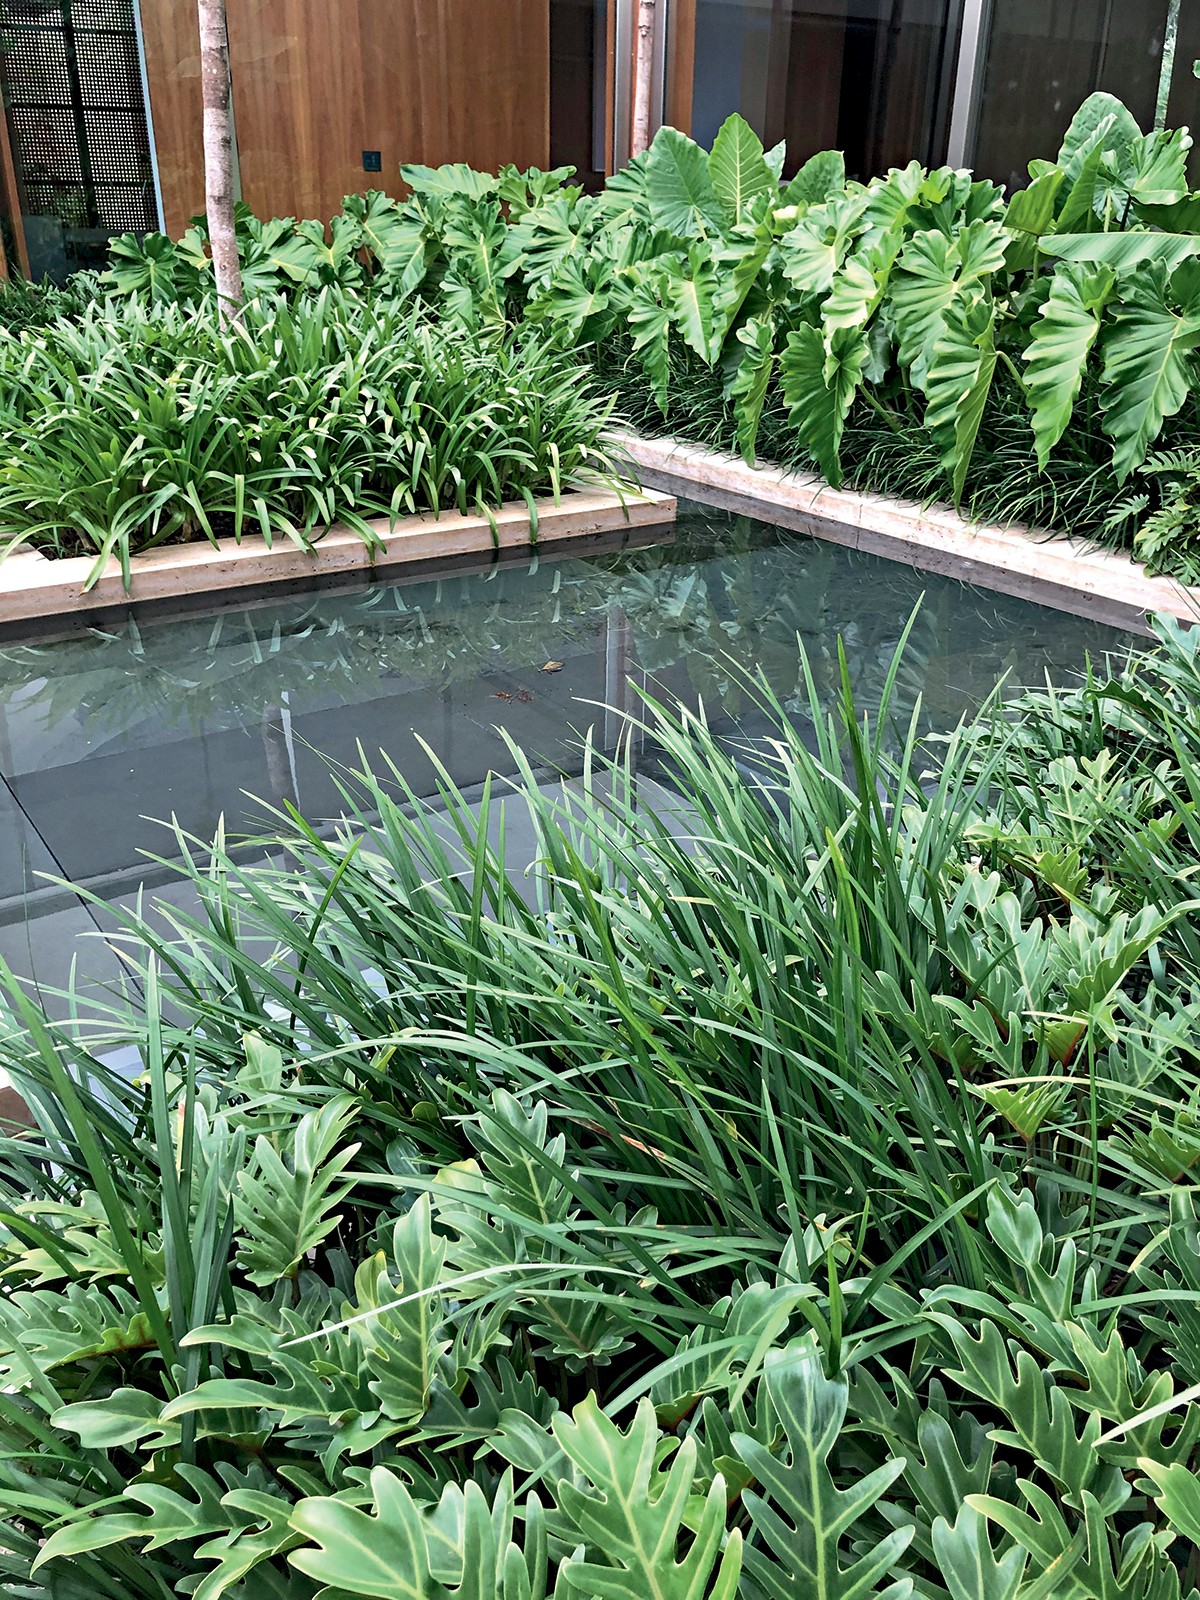 O extenso espelho d’água de ardósia preta permeia todo o jardim (Foto: Divulgação)